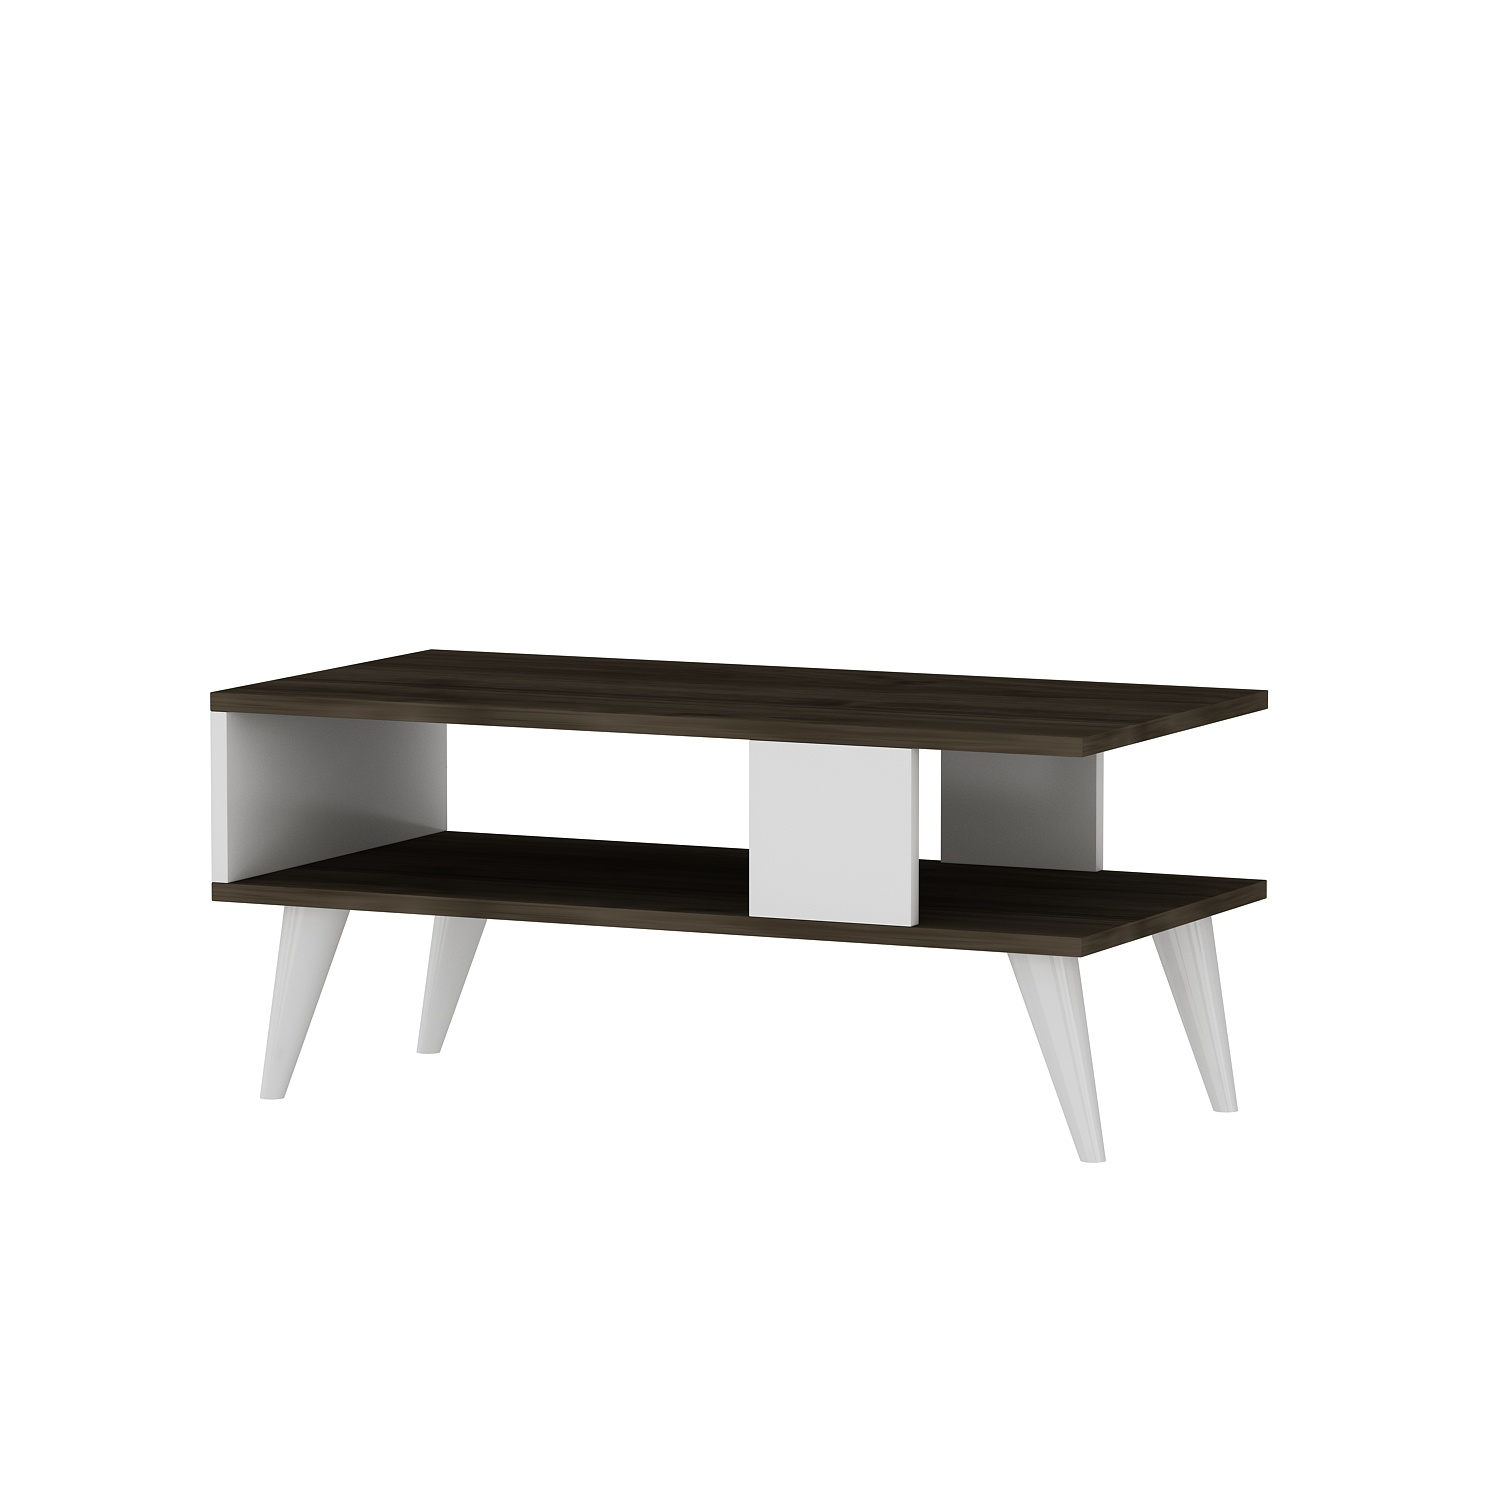 Tavolino in stile scandinavo Jatte L90xH40cm Legno scuro e bianco